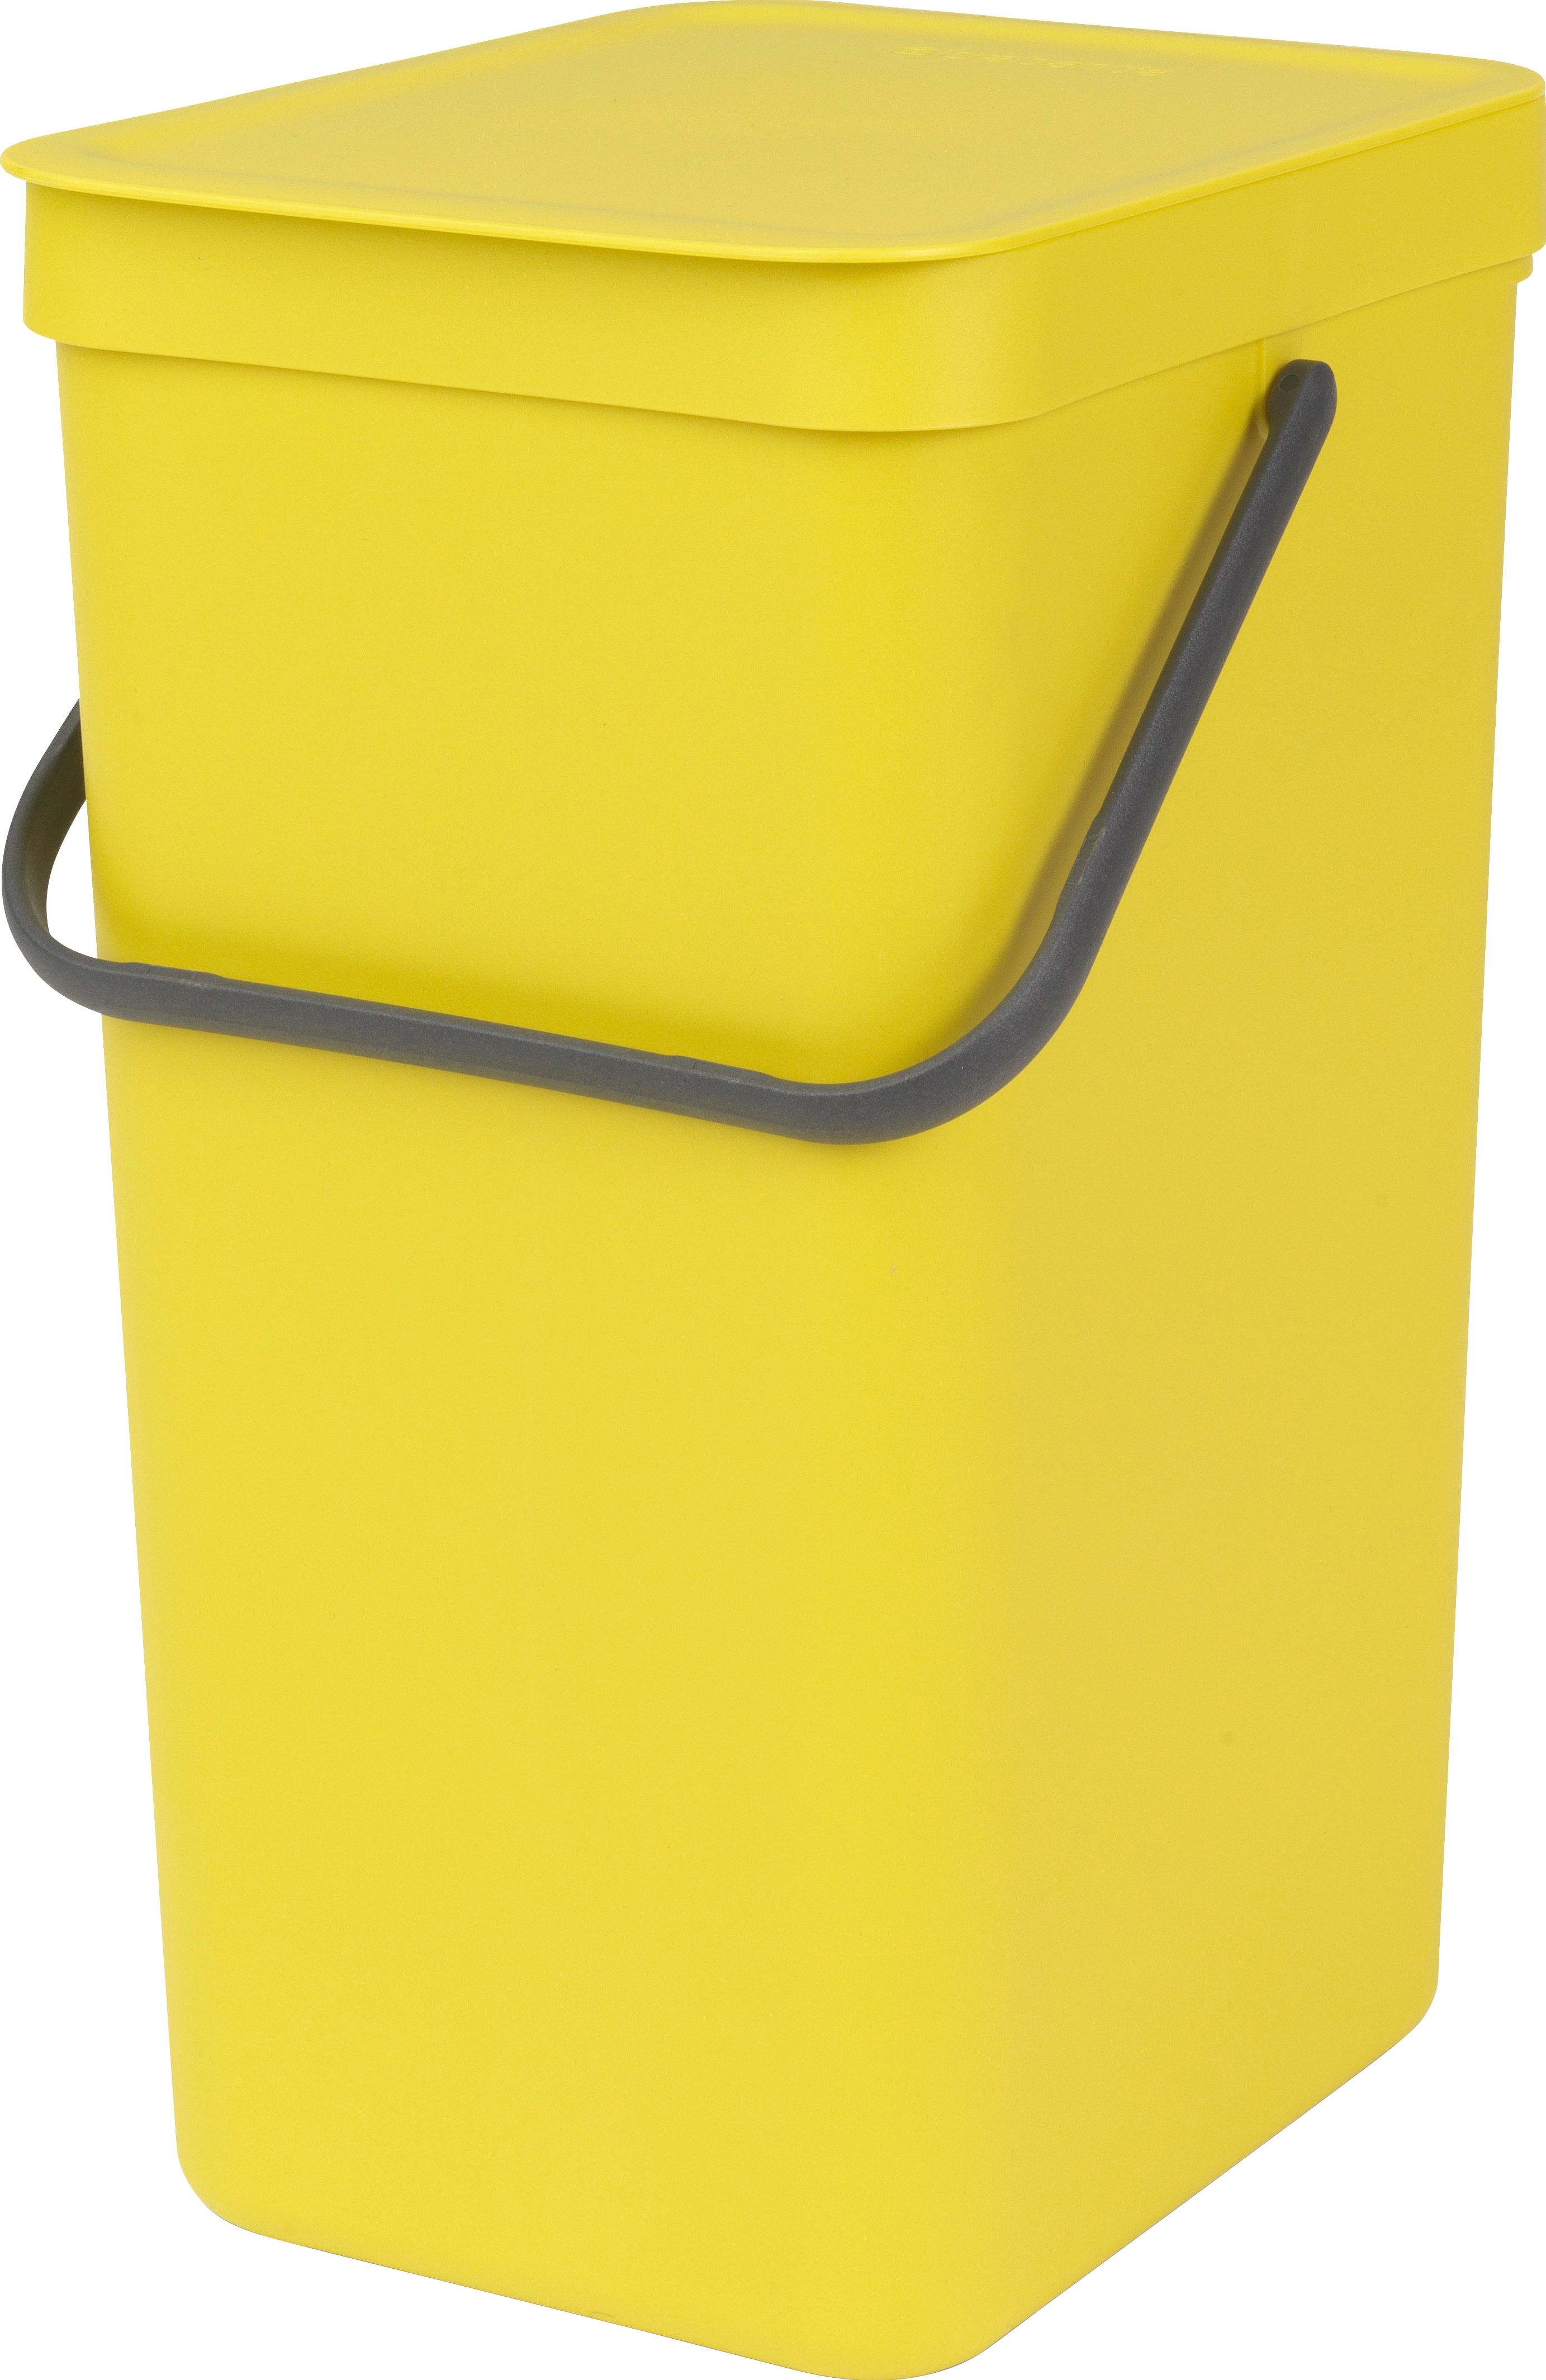 Brabantia Abfallbehälter Sort & Go 16 l Gelb mit Wandhalterung kaufen bei  OBI